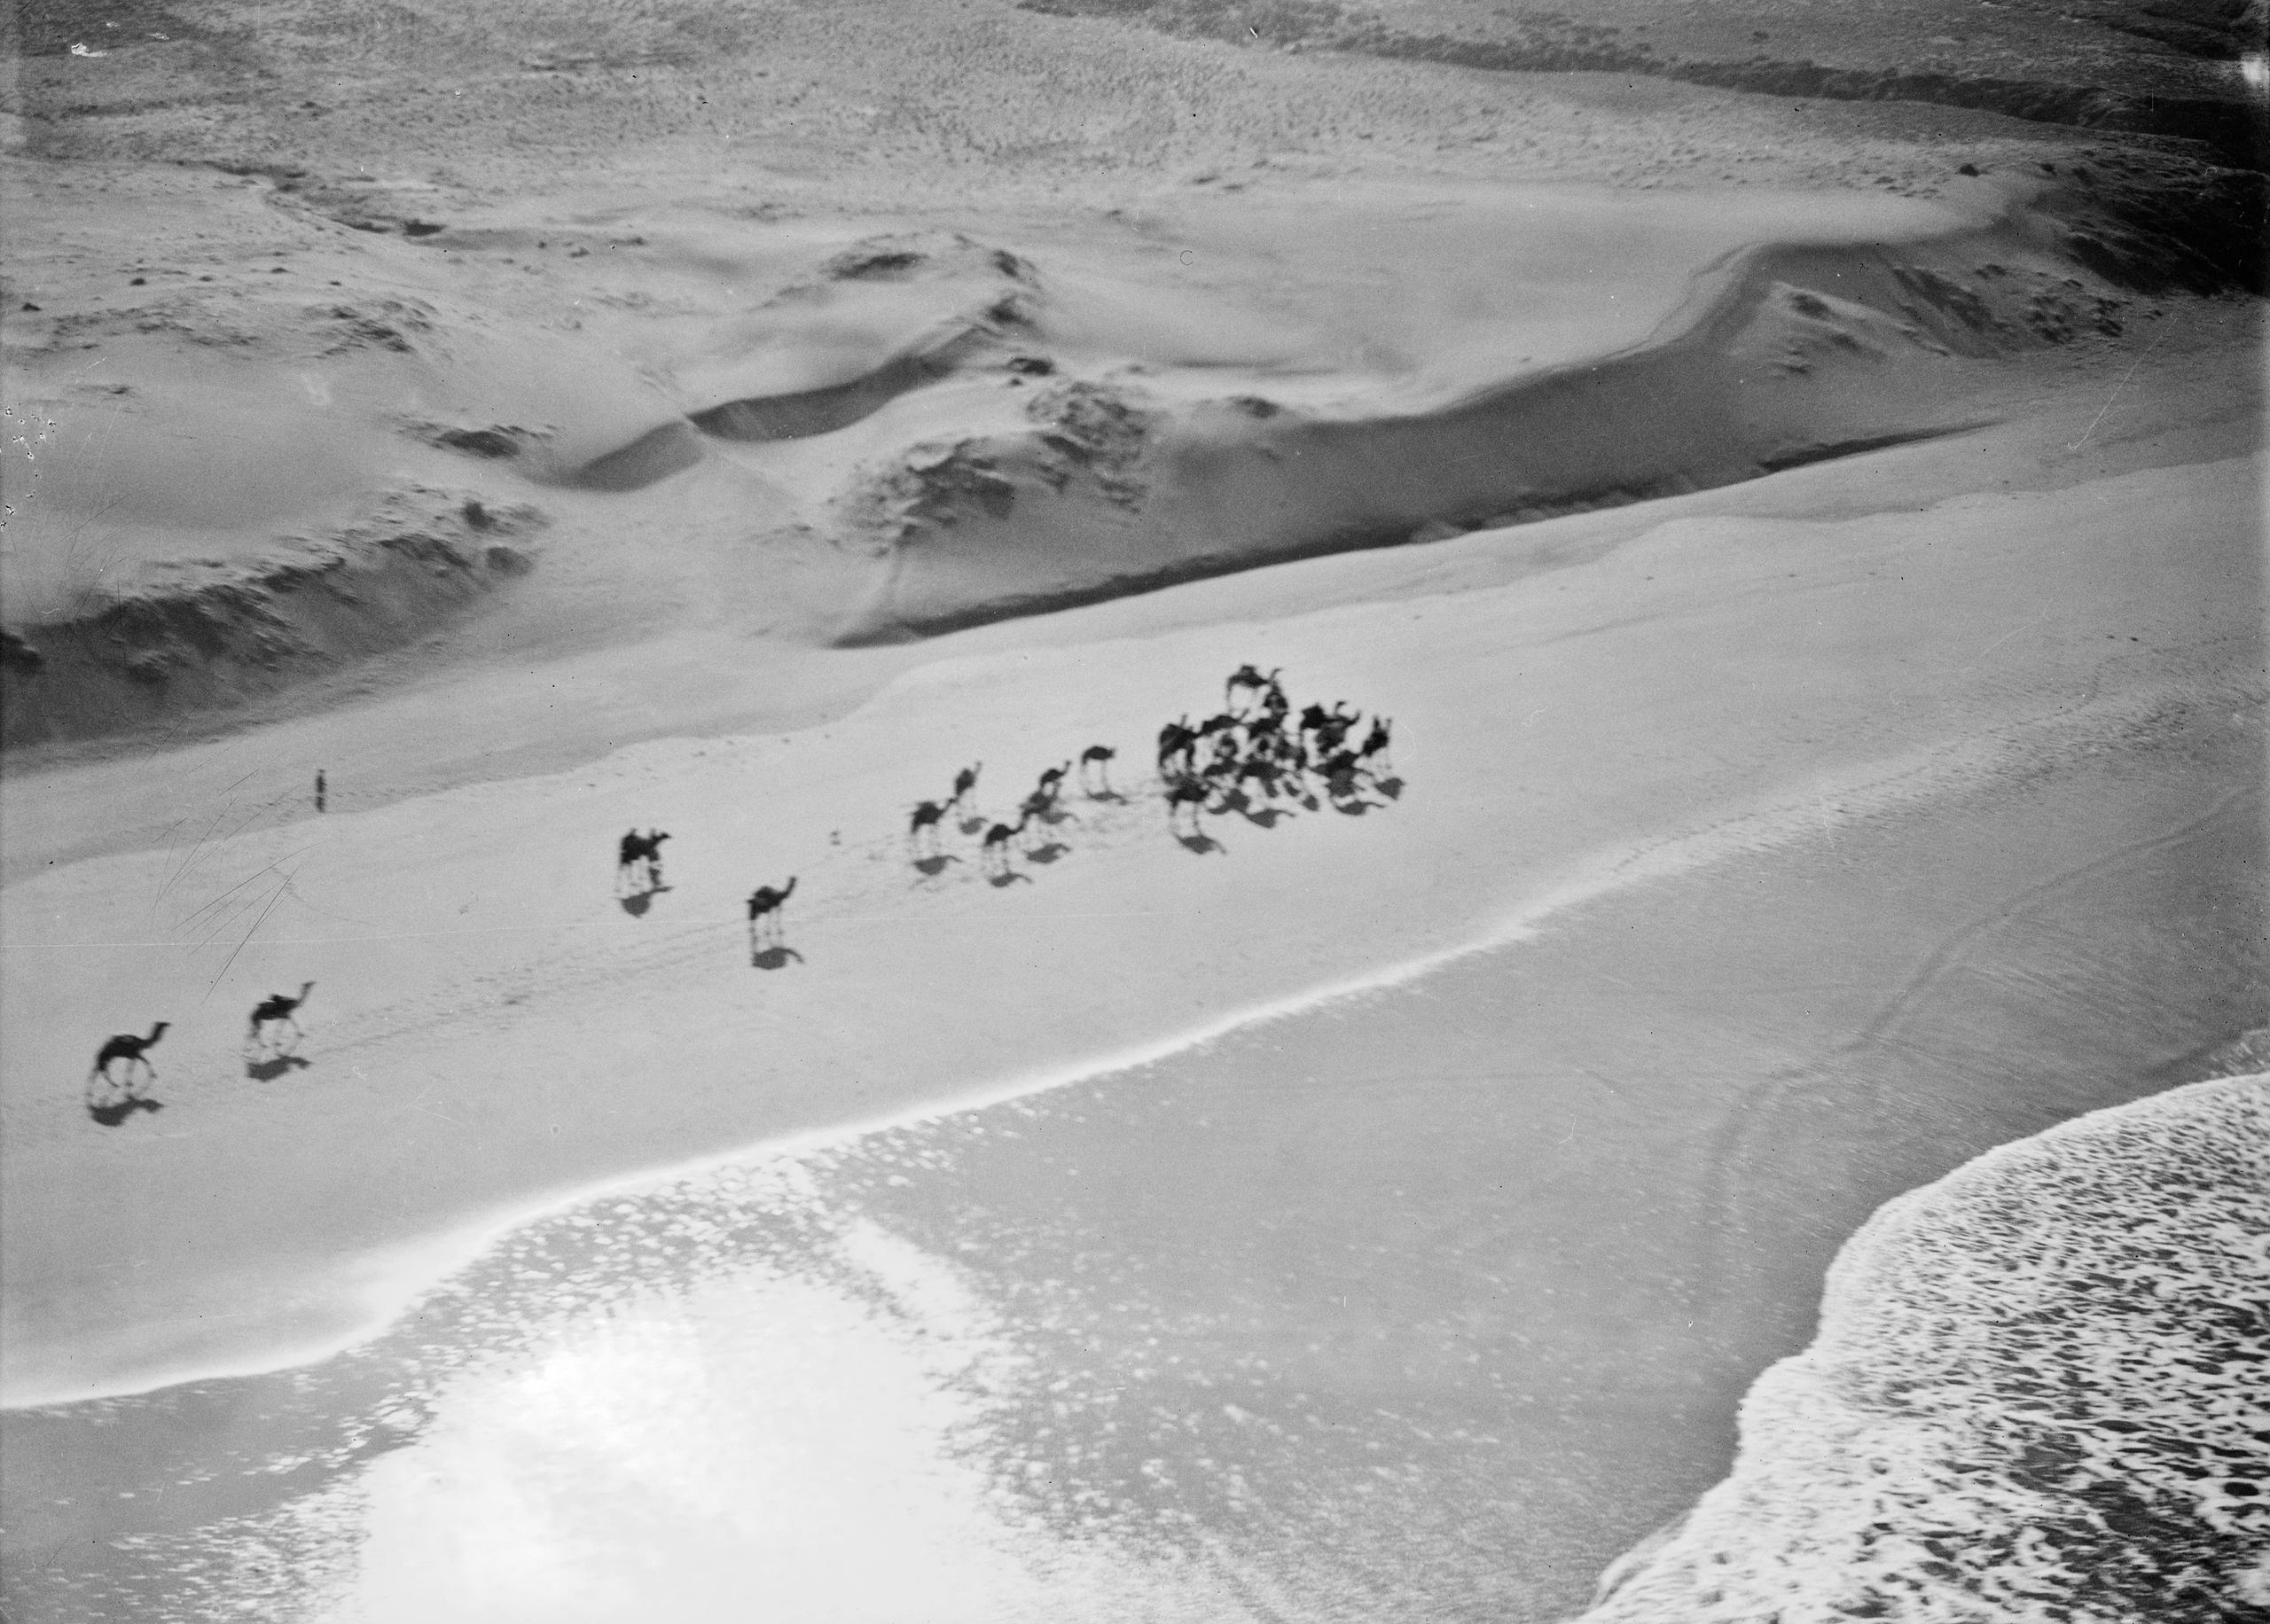 Blick von oben auf Wüste und Meer. Eine Karawane schreitet am Strand entlang.